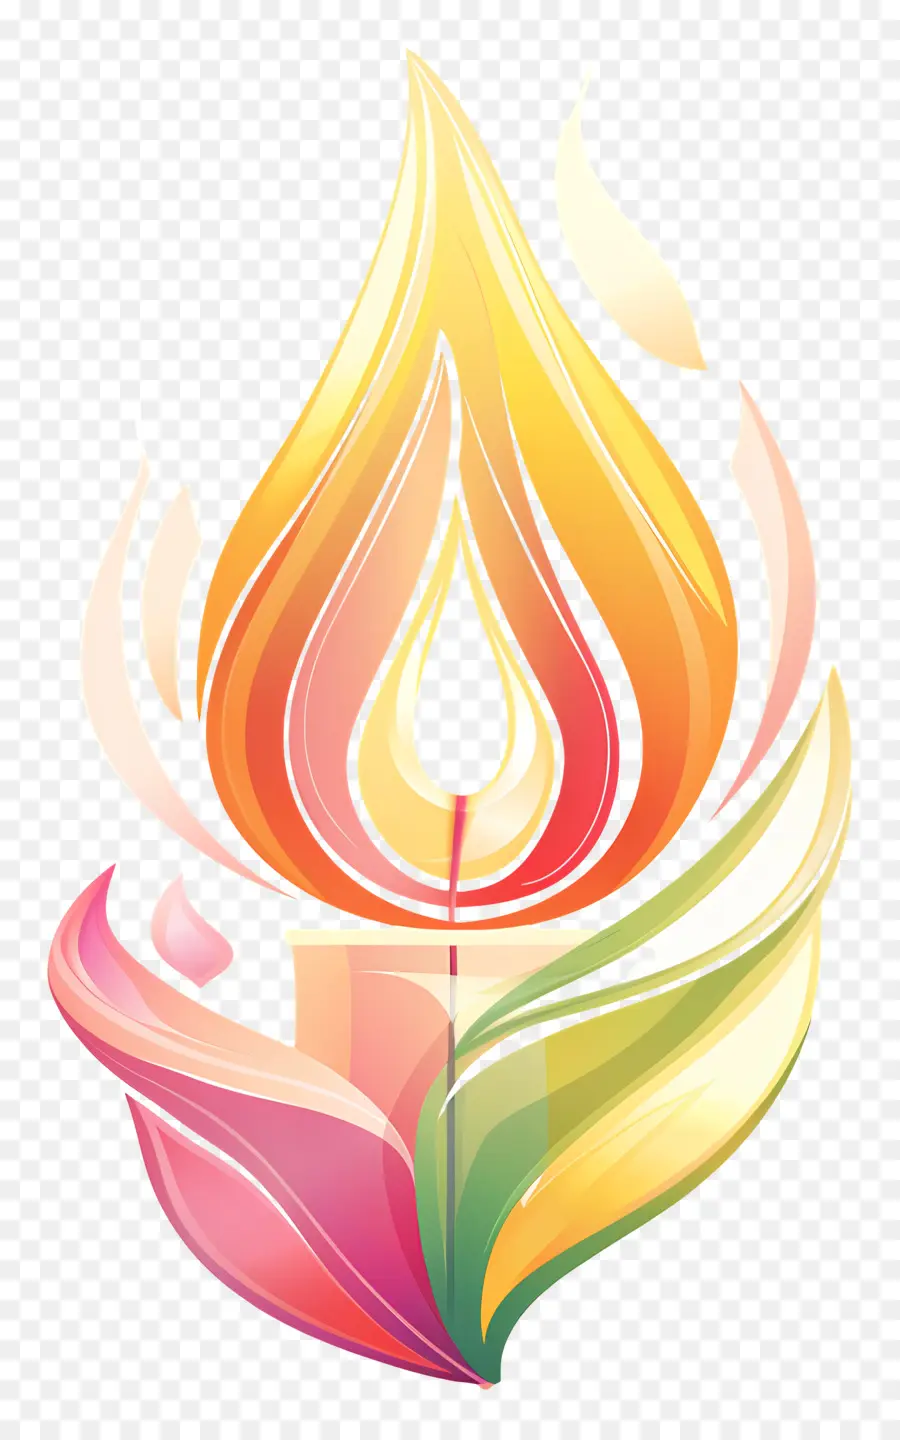 ngày tái gia hạn nến ngọn lửa màu sắc rực rỡ - Lit nến với ngọn lửa nhảy múa, thiết kế đầy màu sắc